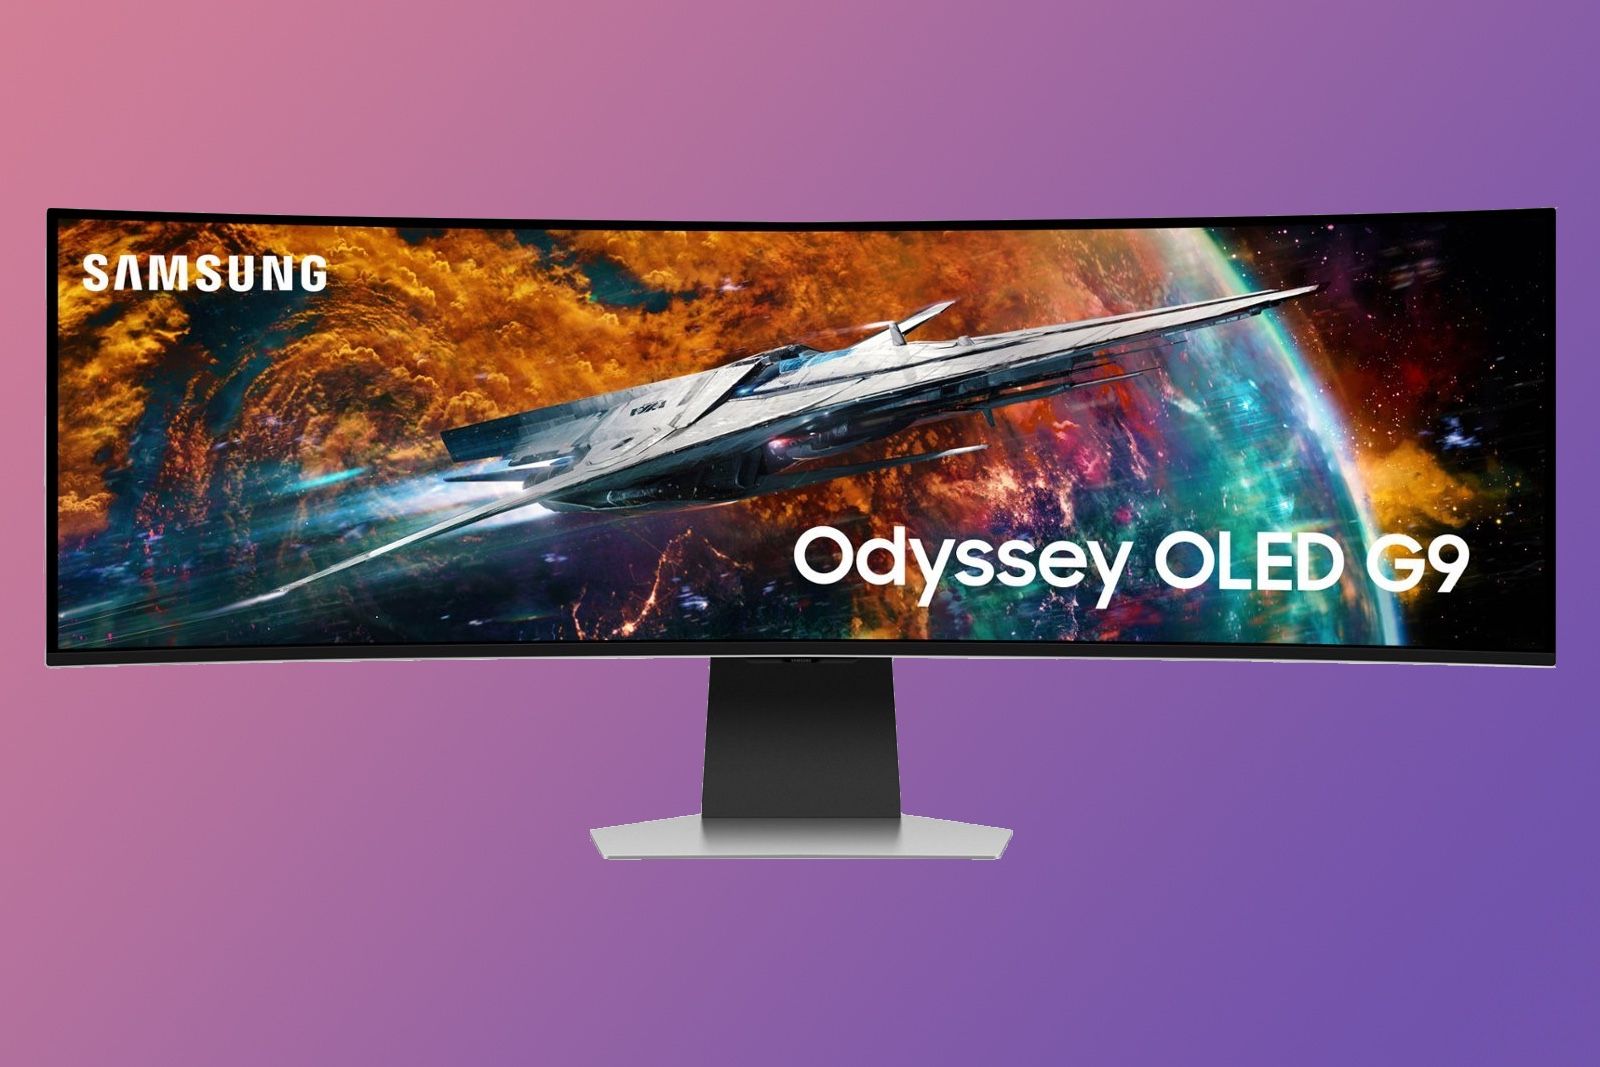 Samsung Odyssey OLED G9 